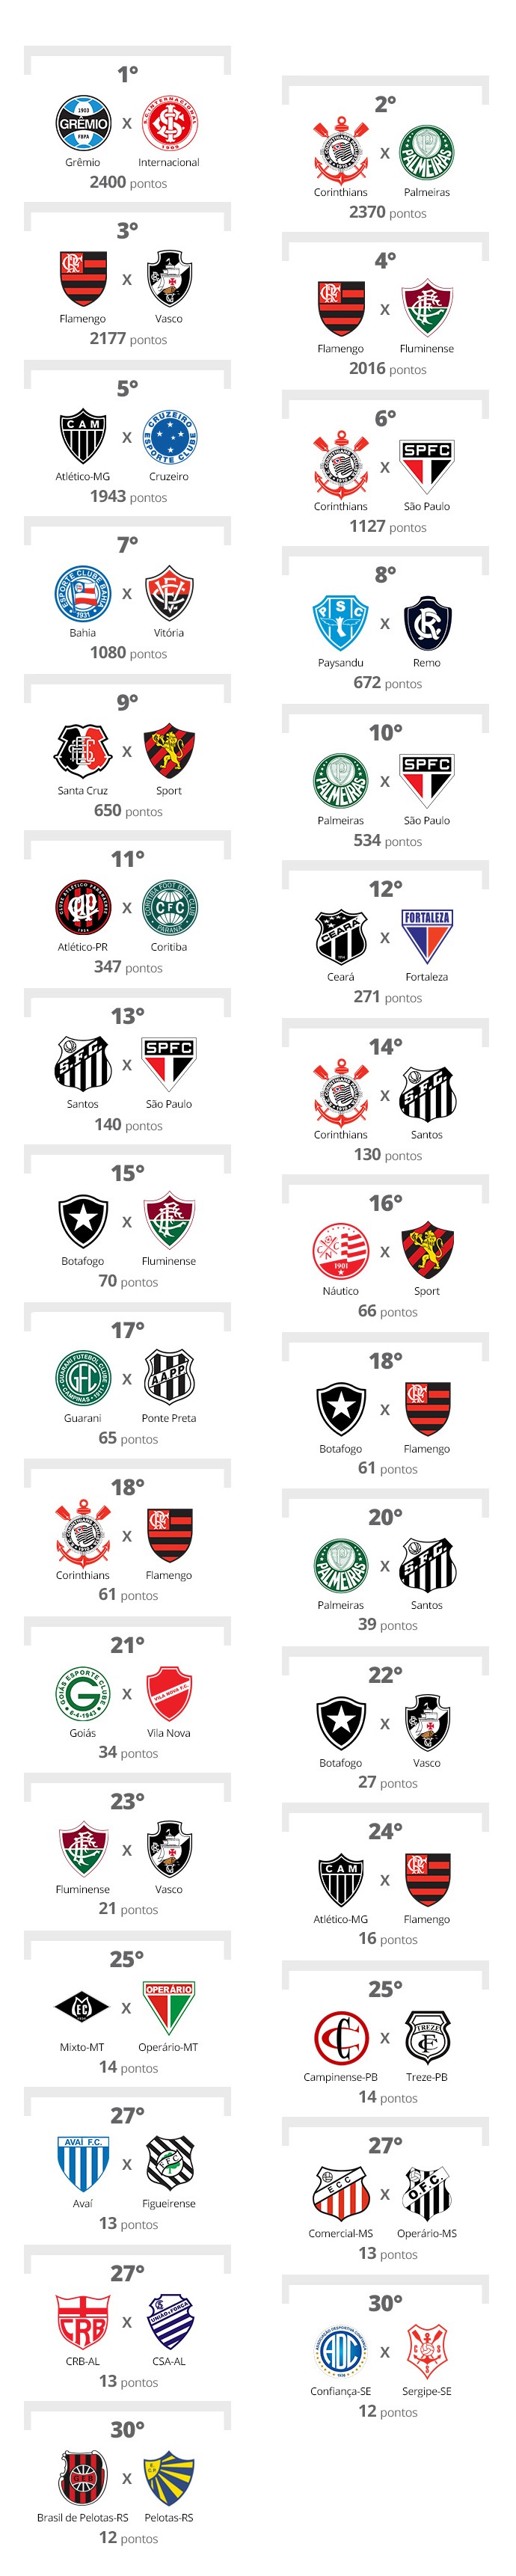 Flamengo x Palmeiras: os números de uma nova rivalidade nacional